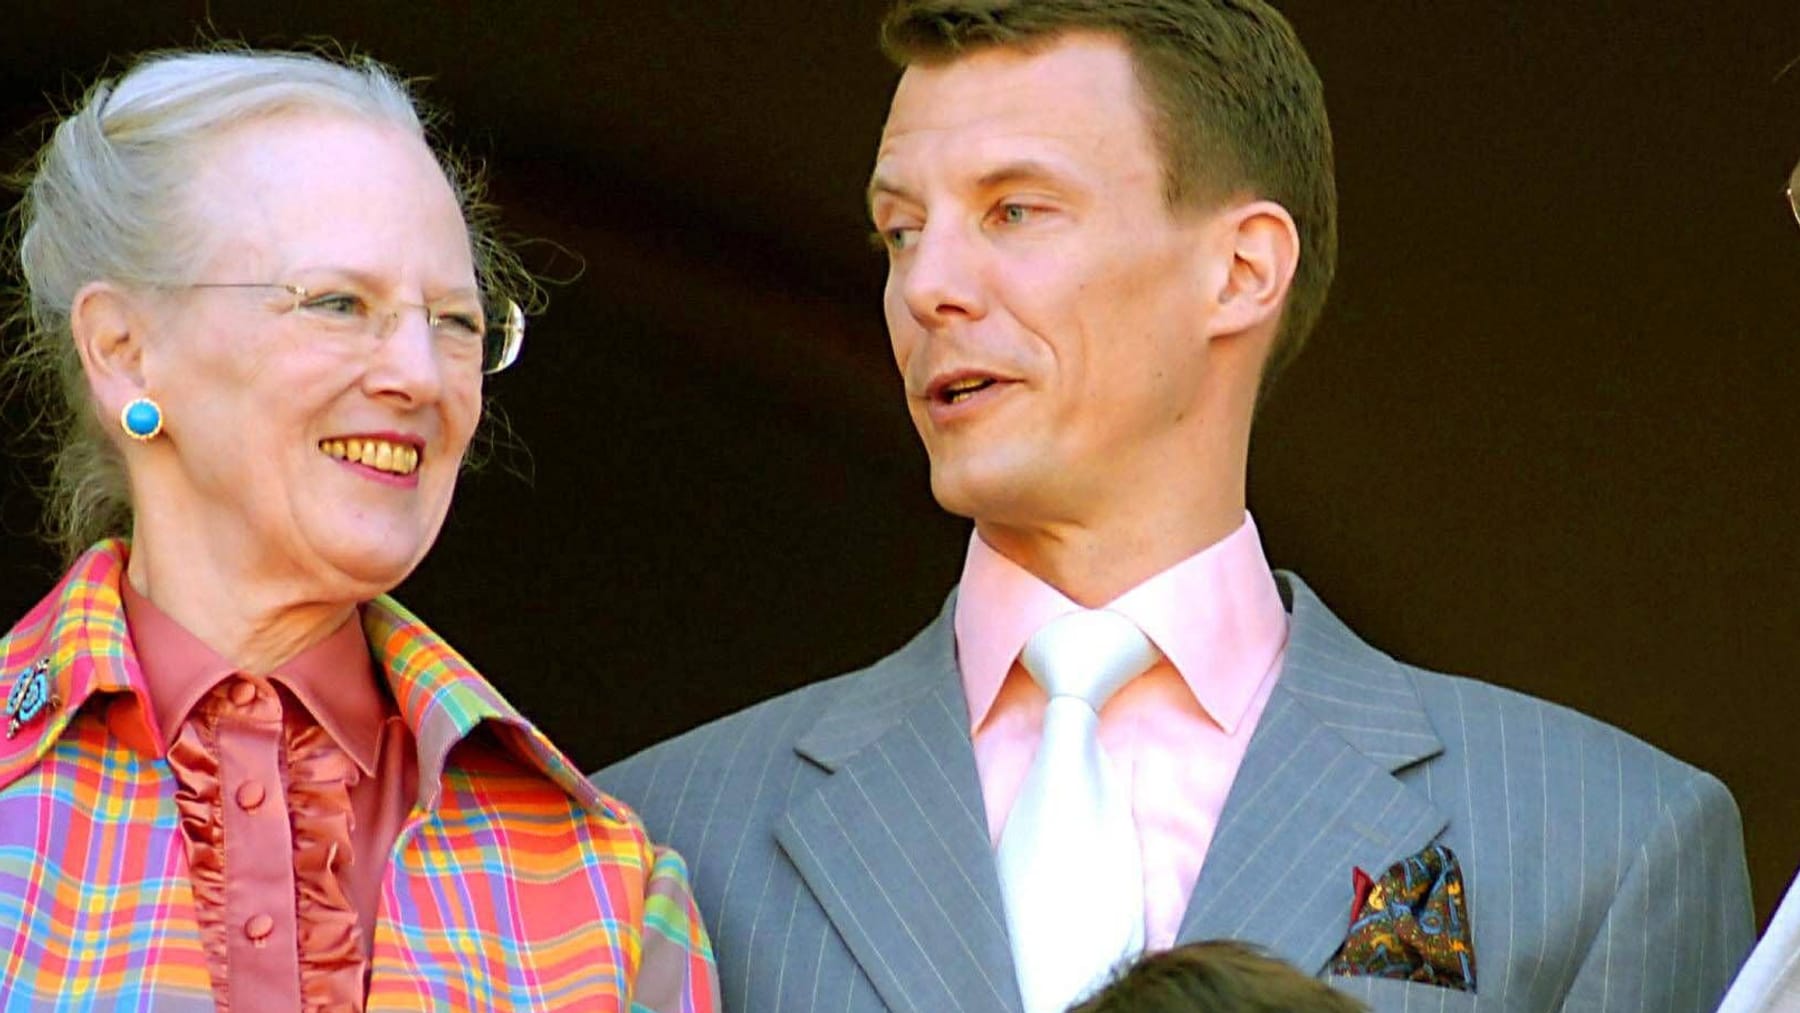 Koningin Margaret II en prins Joachim voeren crisisgesprekken